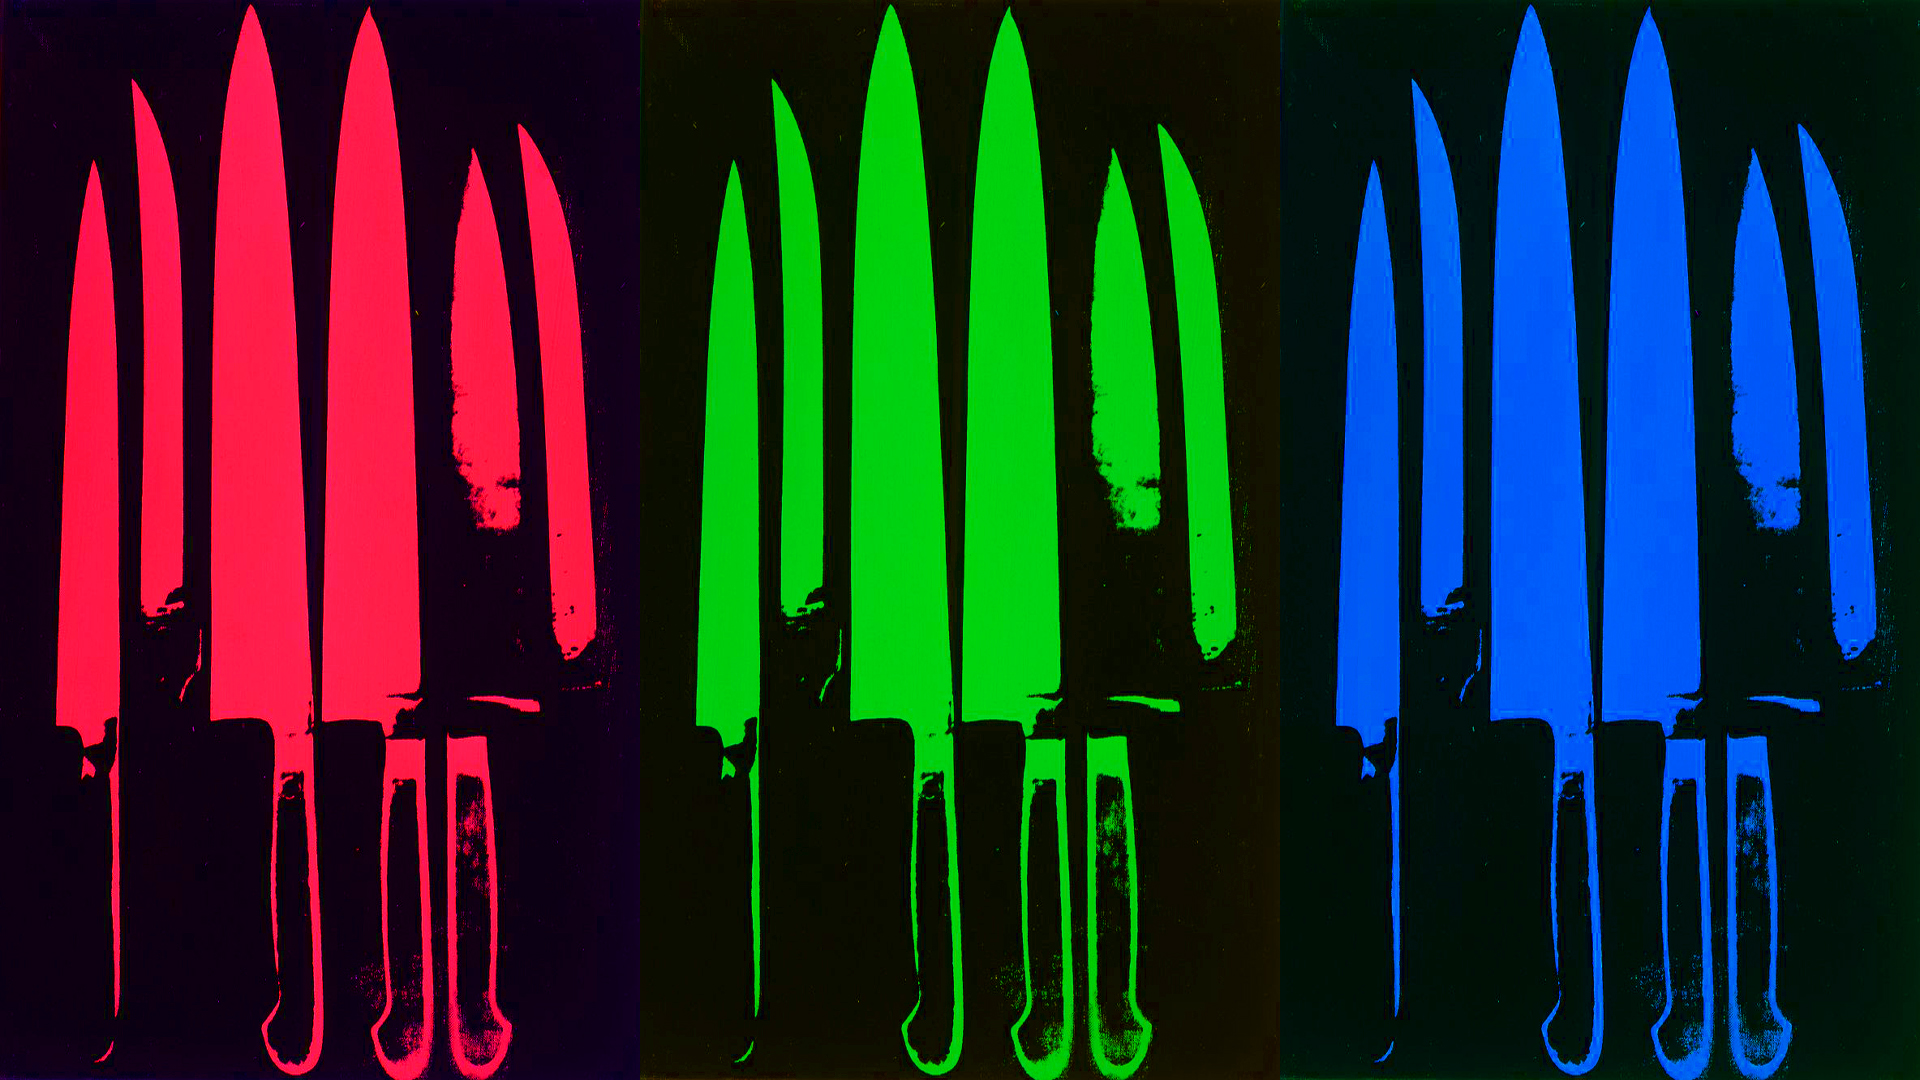 Wallpaper Warhol Knives Image